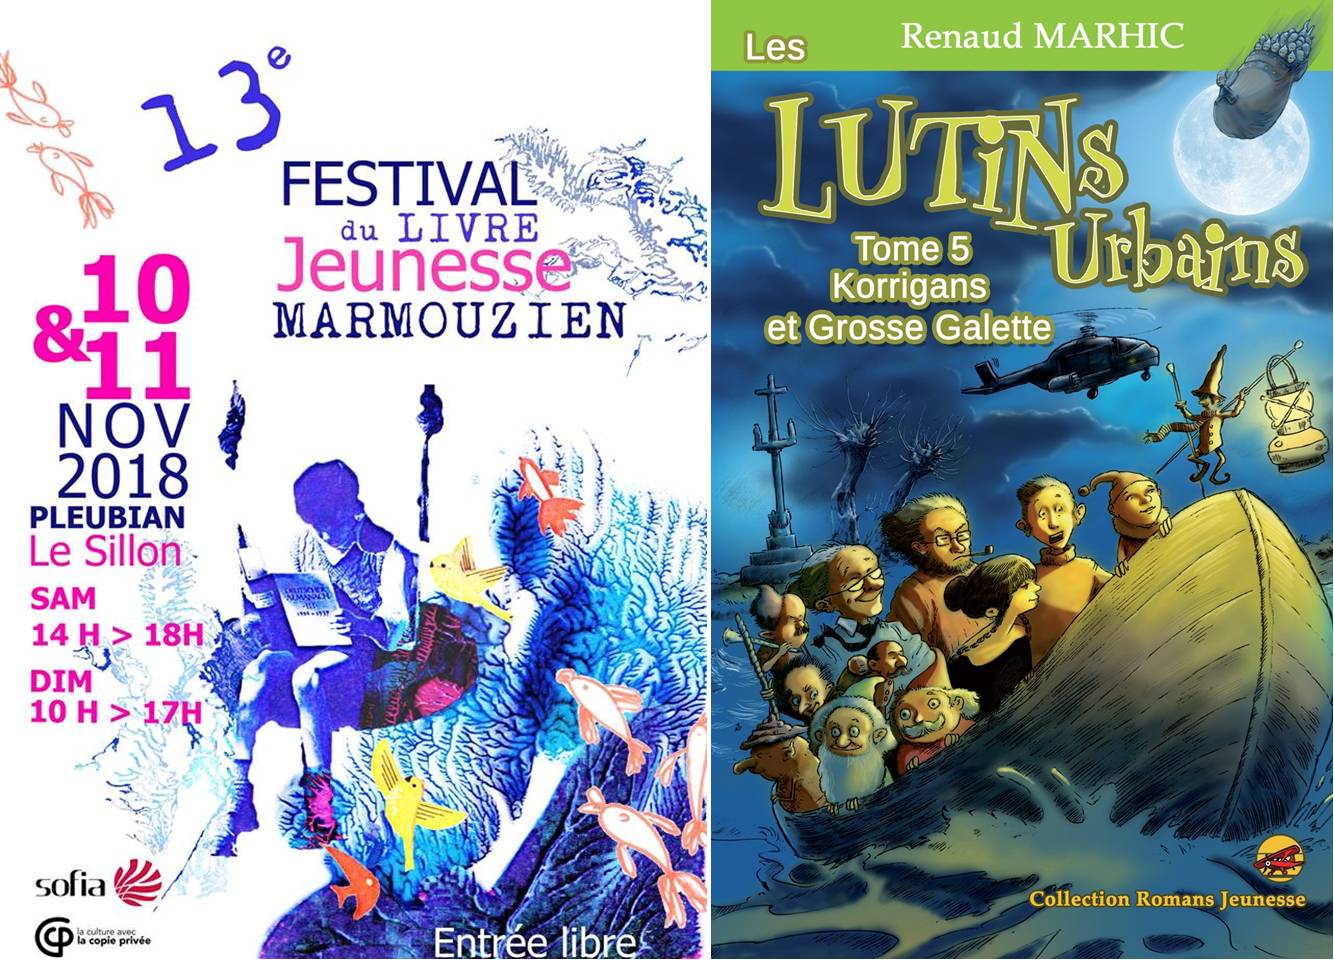 Les Lutins Urbains au Festival du livre jeunesse Les Marmouzien de Pleubian 2019